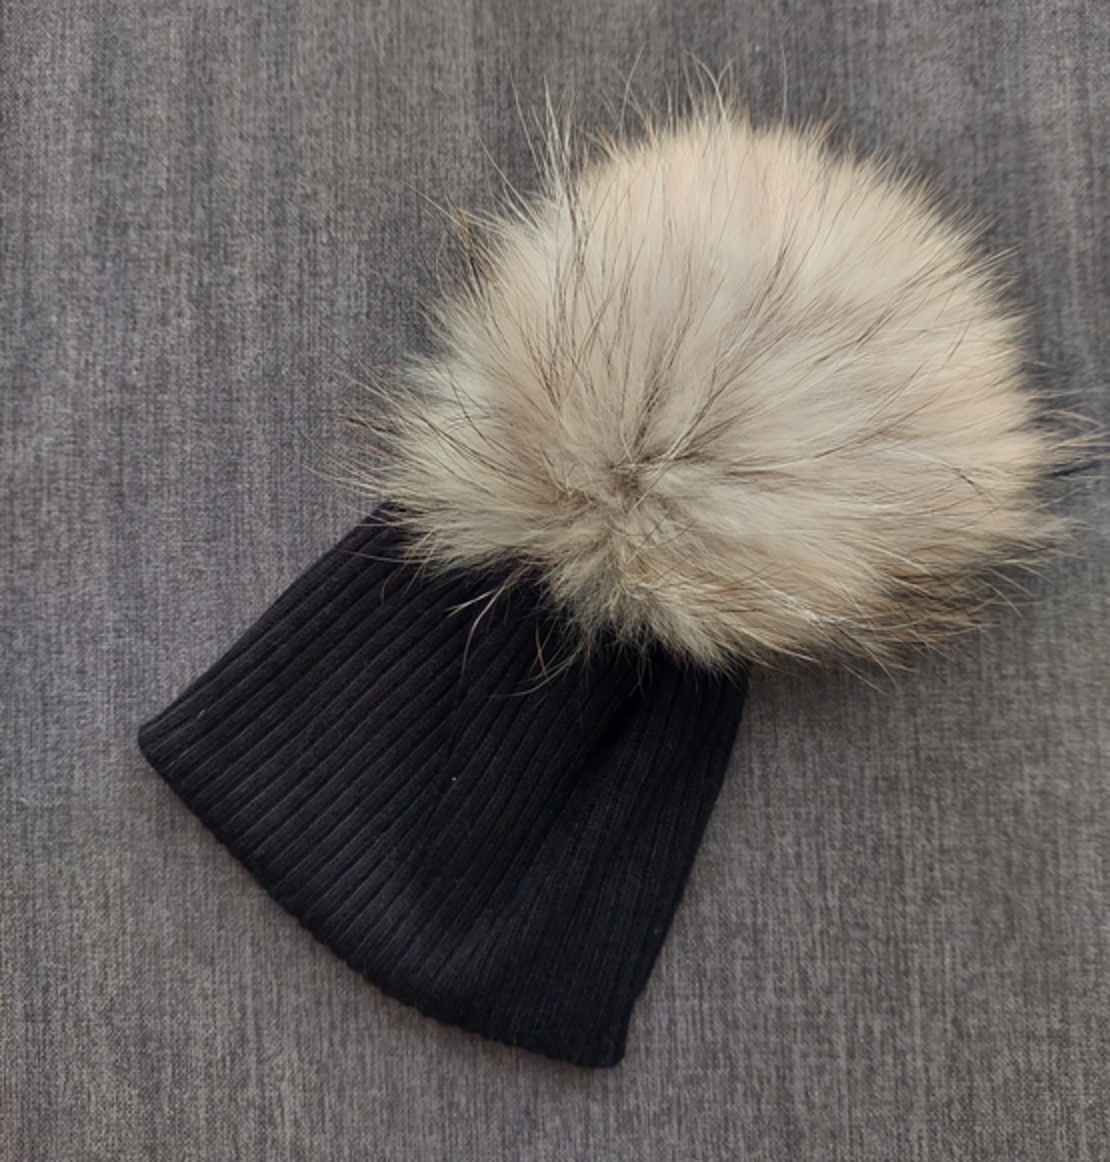 כובע שחור עם פונפון בגוון חום 0-6M